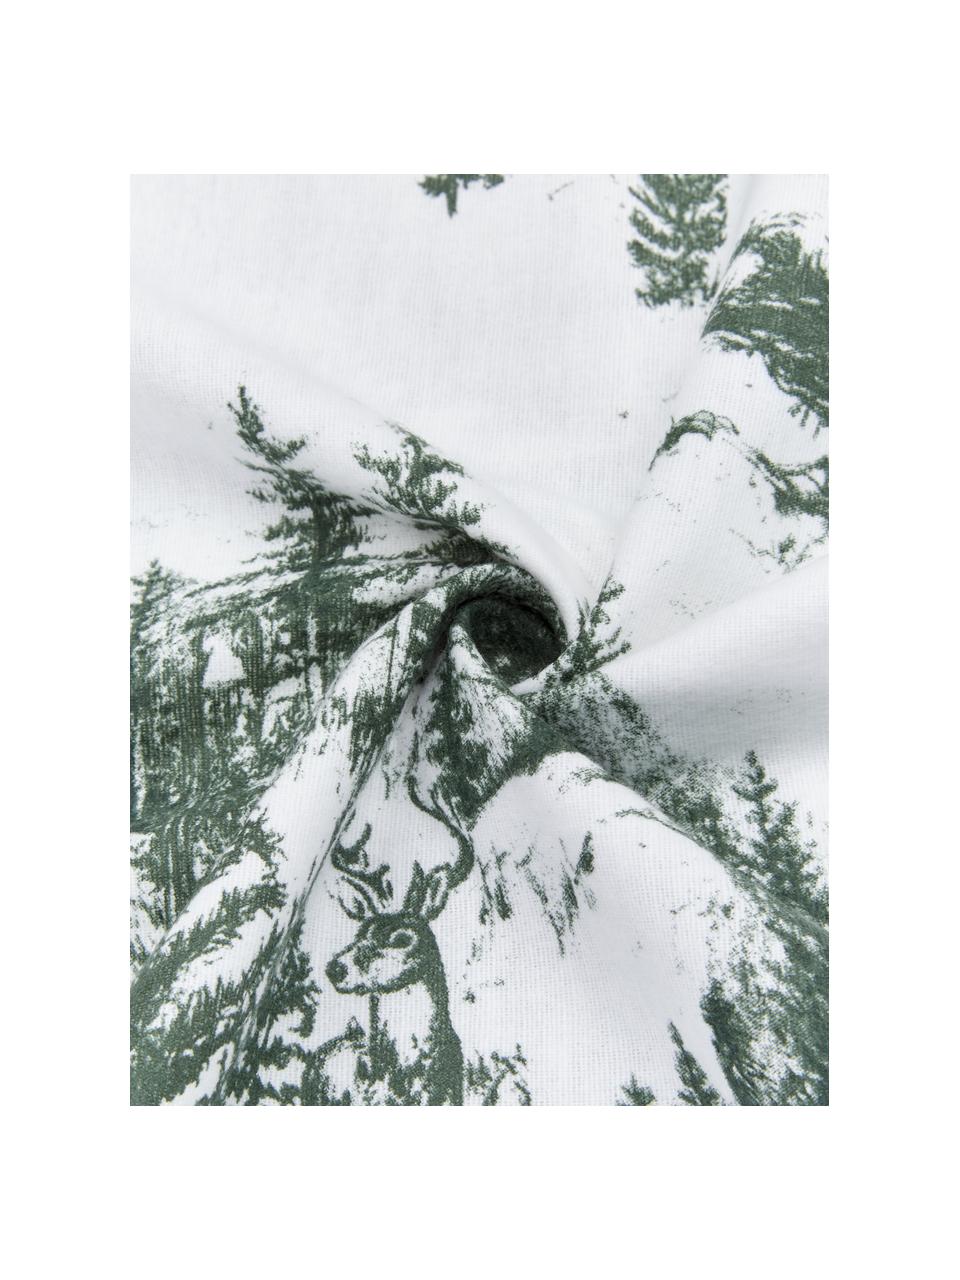 Flanell-Bettwäsche Nordic mit winterlichem Motiv in Grün/Weiß, Webart: Flanell Flanell ist ein k, Grün, Weiß, 135 x 200 cm + 1 Kissen 80 x 80 cm